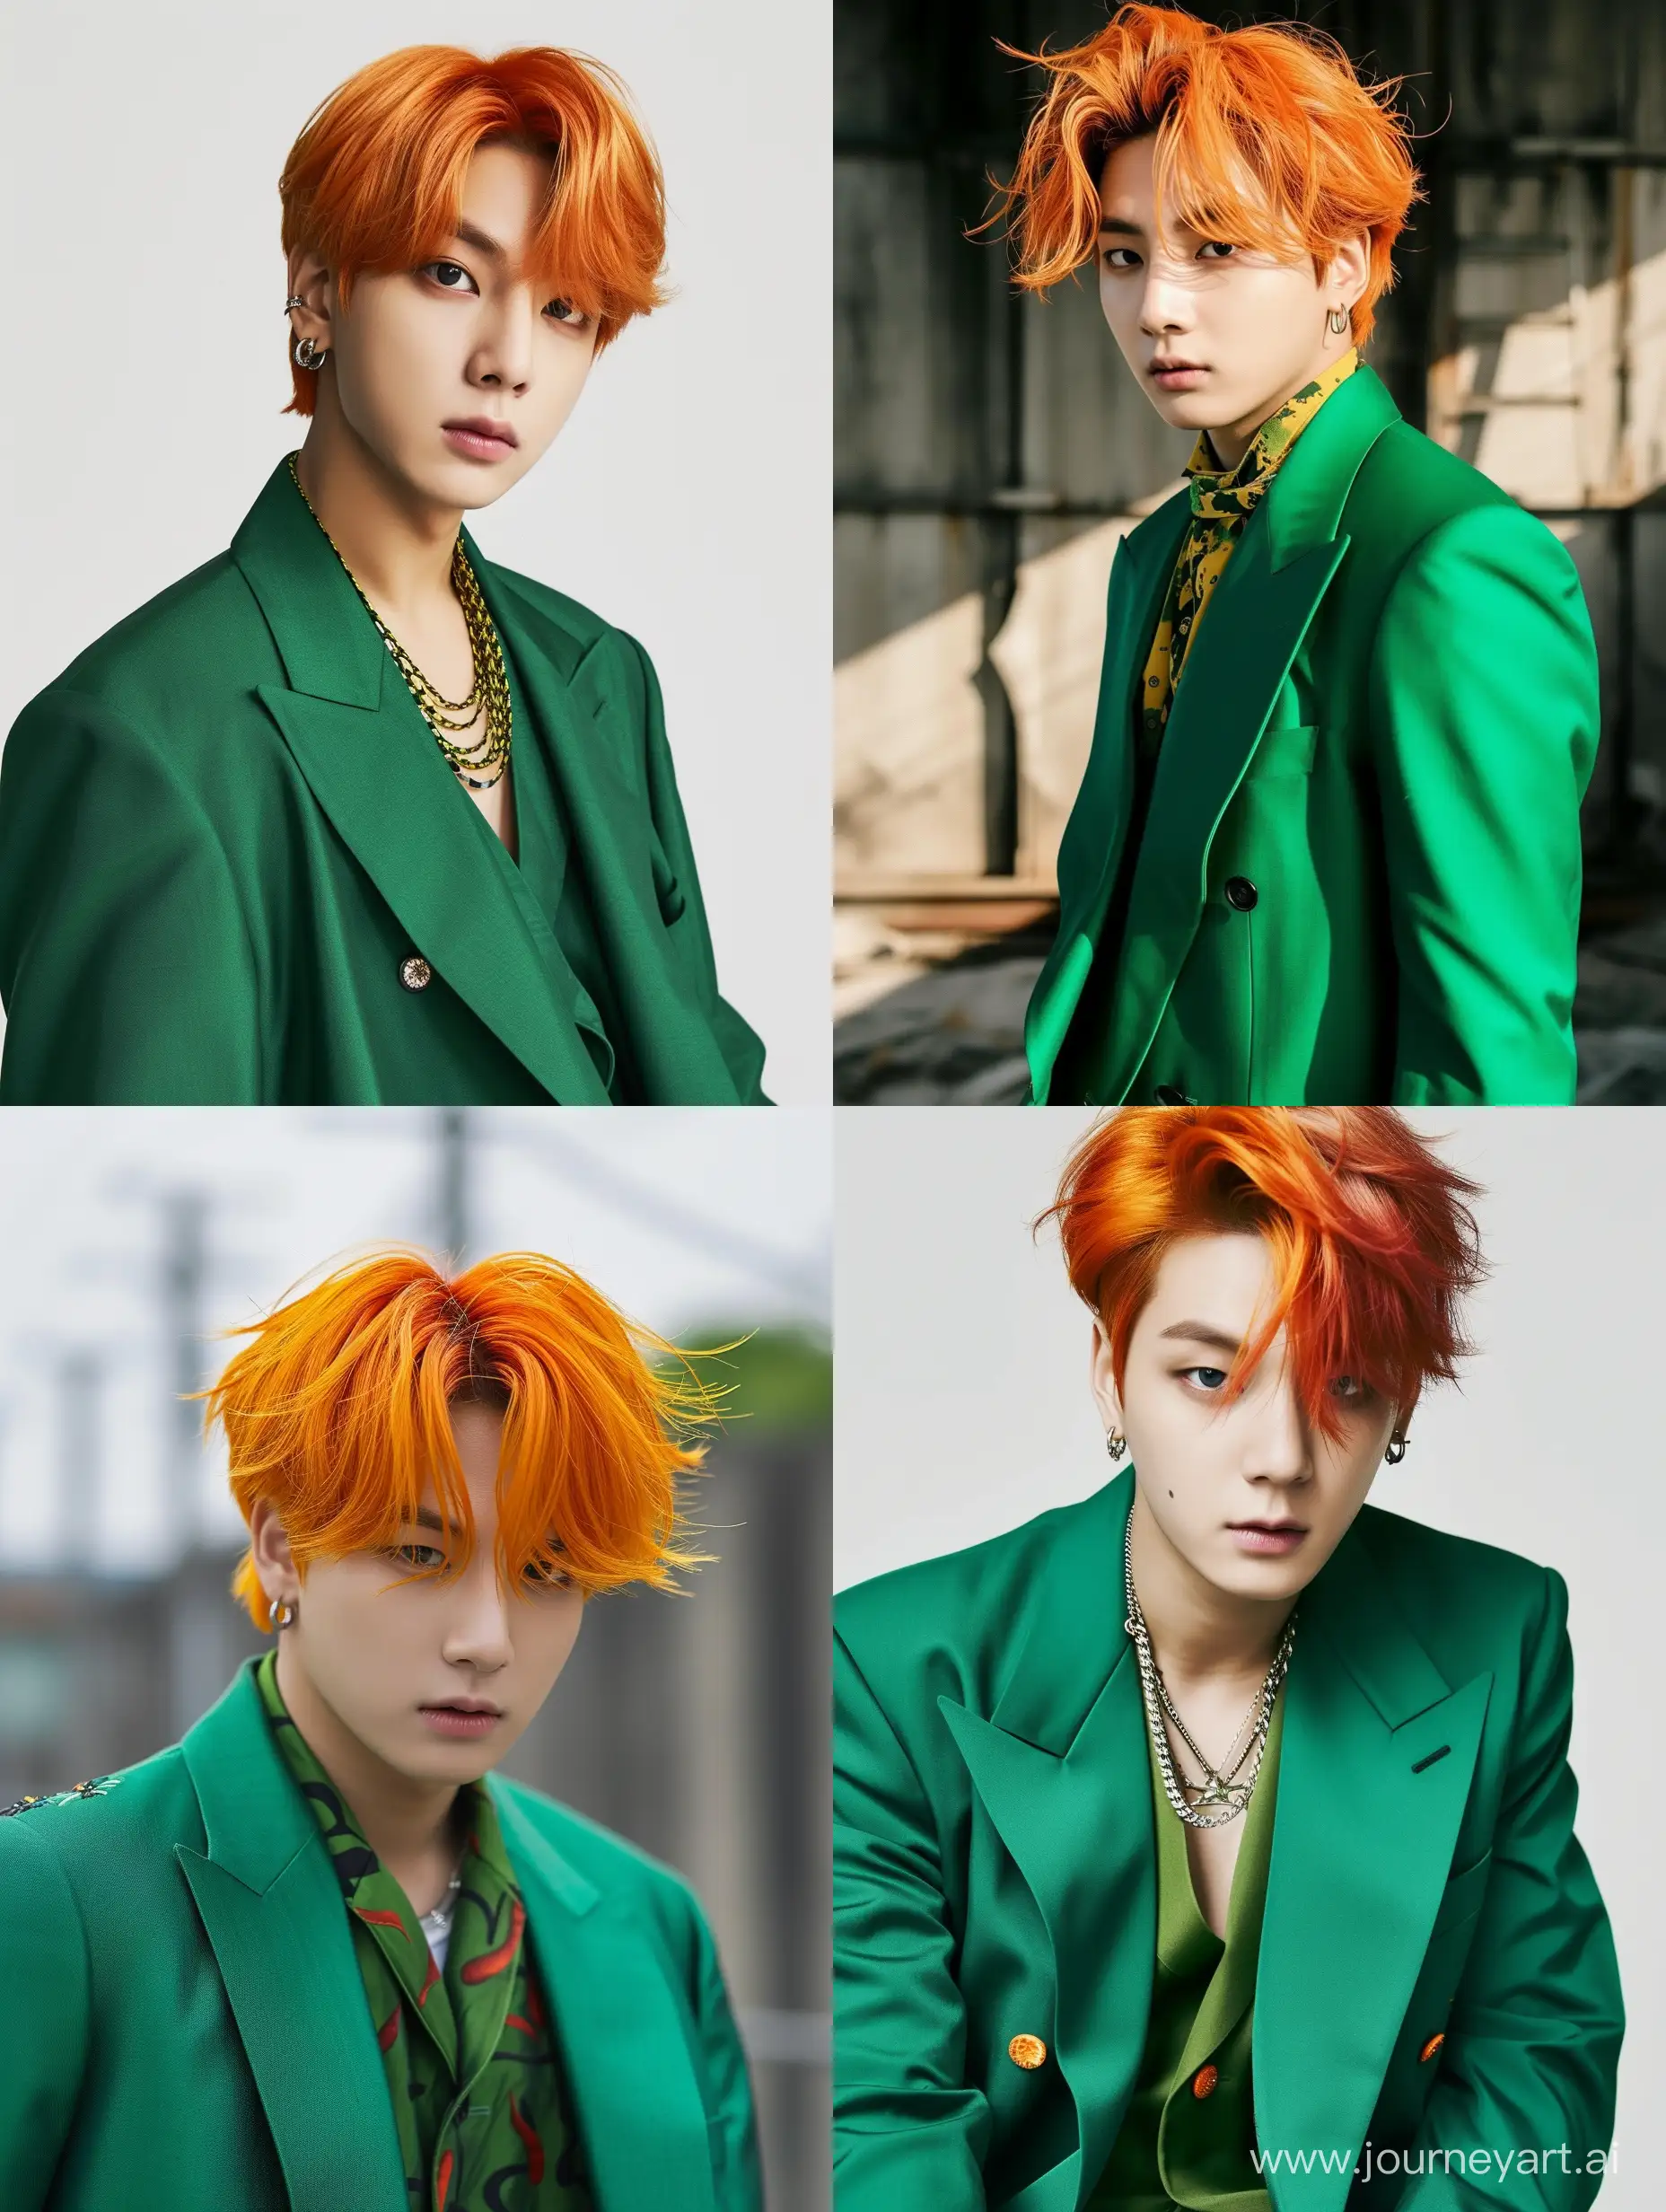 Jungkook de BTS con traje verde y cabello anaranjado intenso